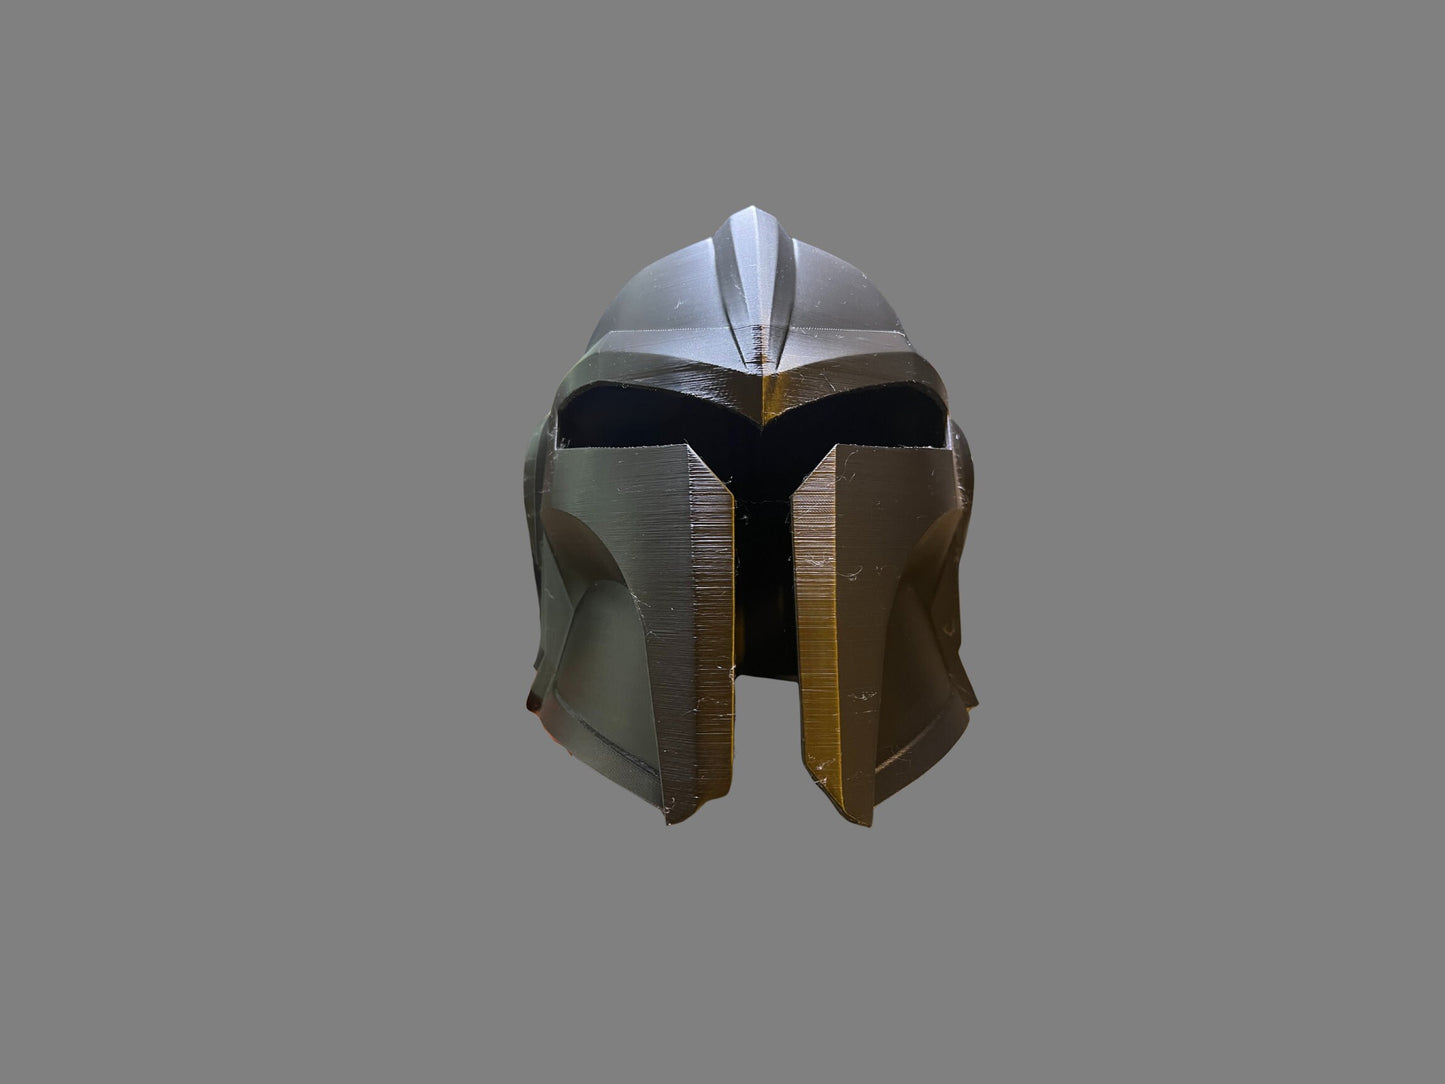 Custom Cosplay Mandalorian Helmet